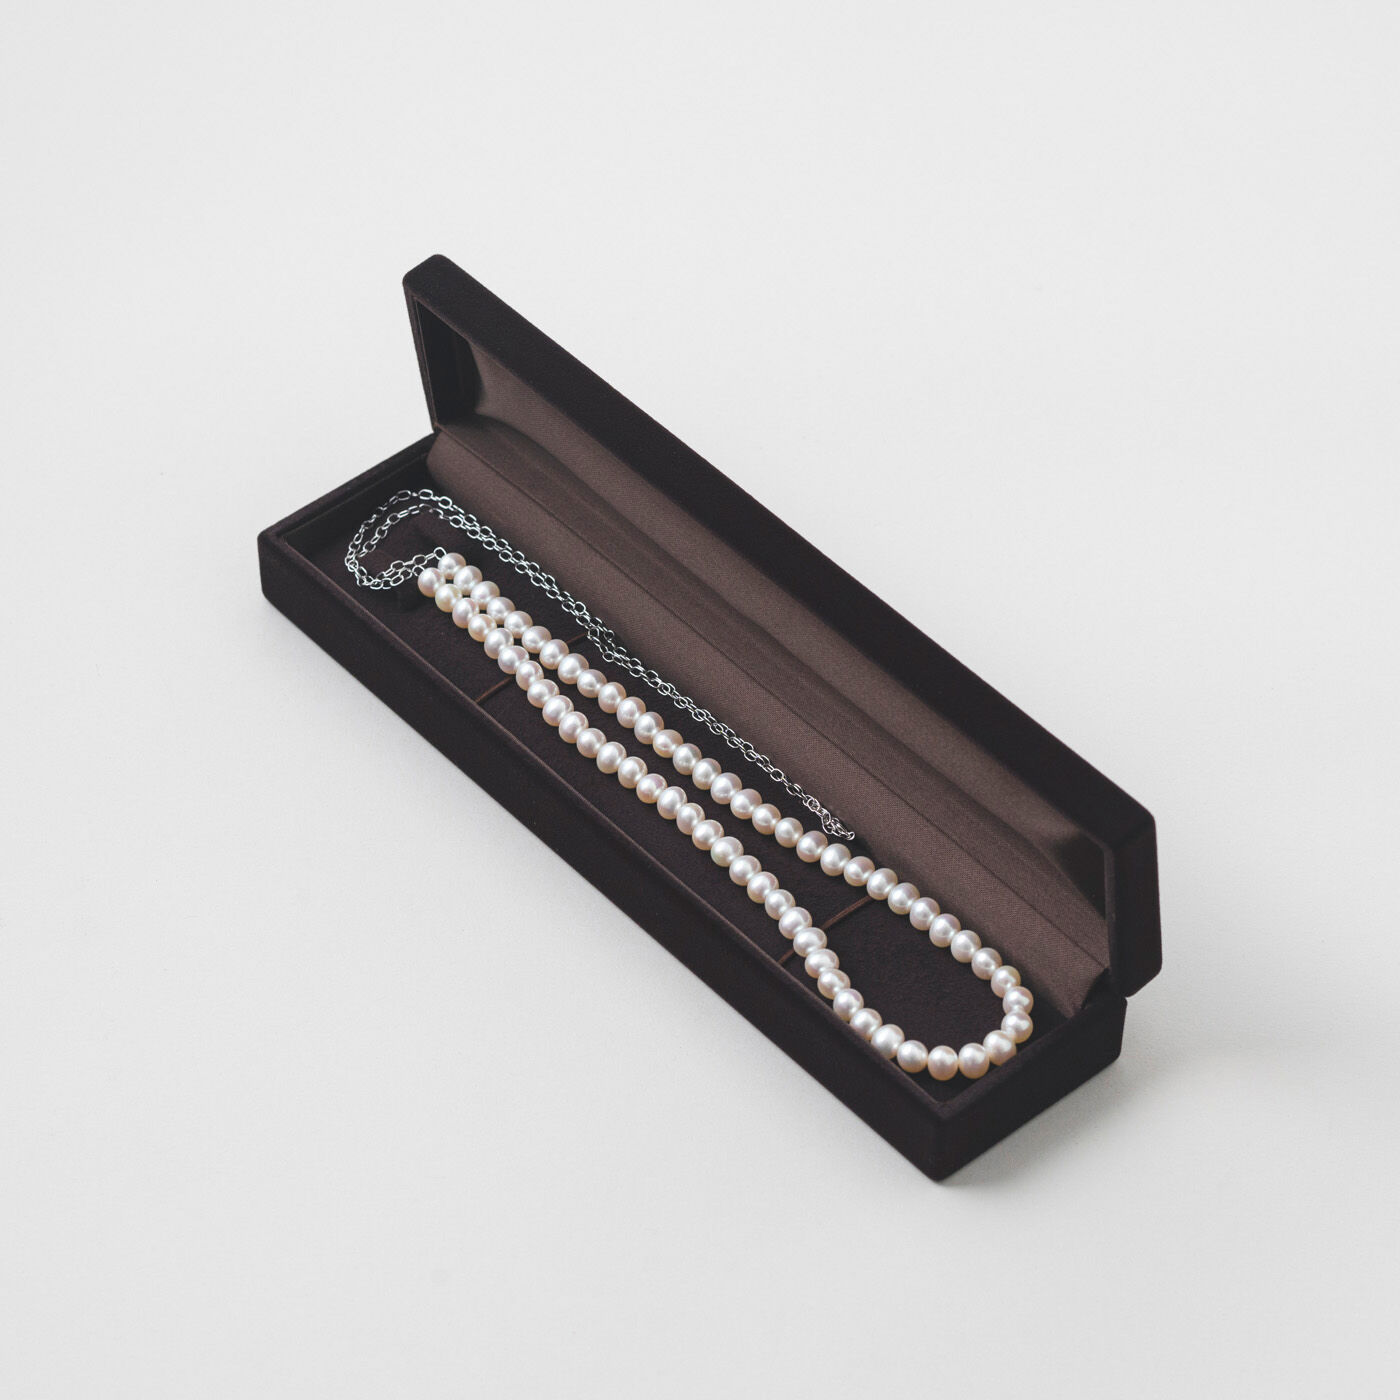 ＆Stories|神戸の老舗真珠メーカーが手掛けた 淡水パールのチェーンネックレス〈シルバー925〉|高級感あるケースに入れてお届けします。贈り物にもぴったり。